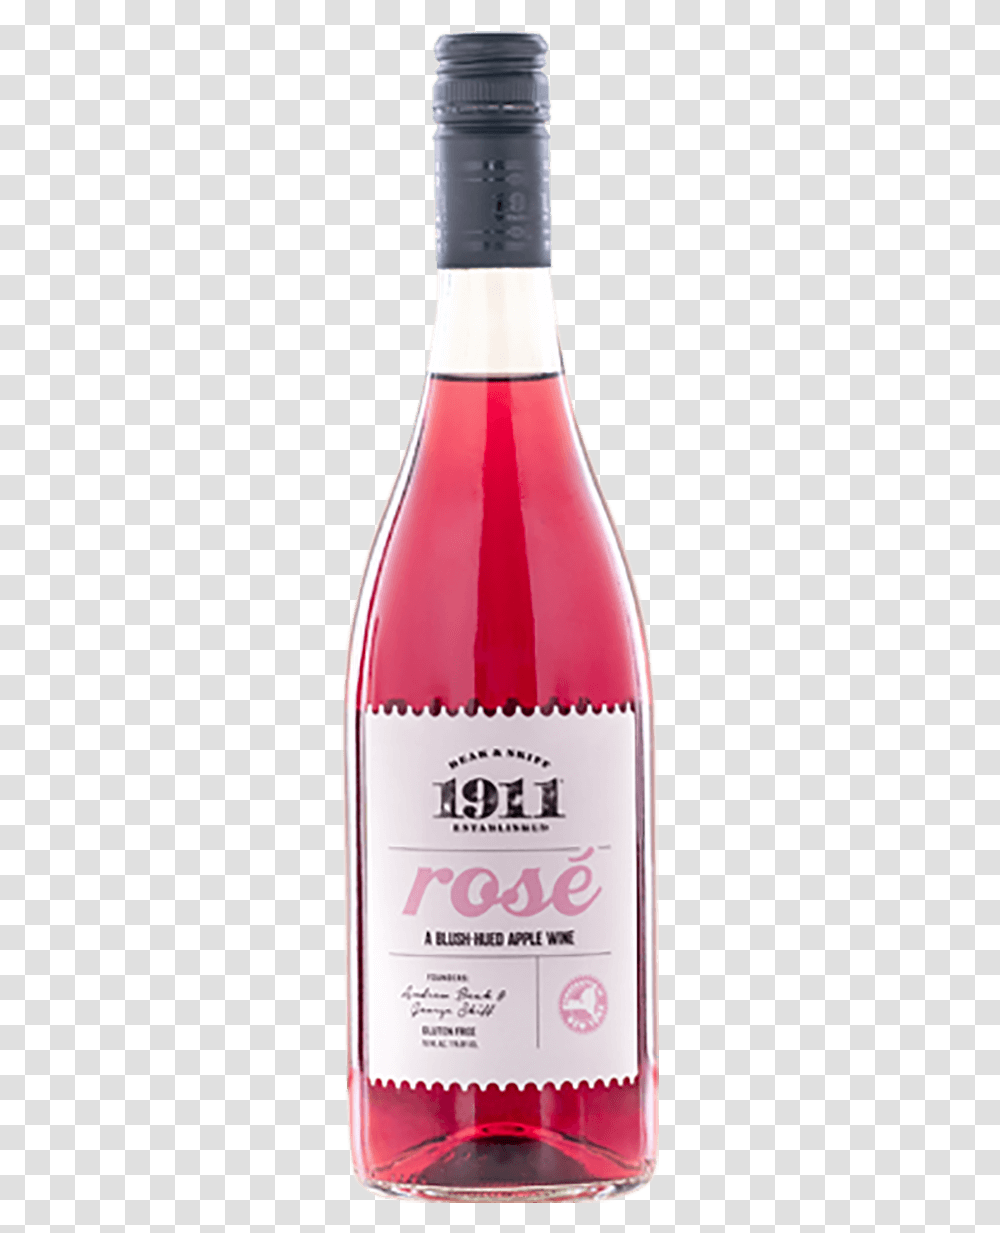 Rose Wine, Cosmetics, Beverage, Drink, Bottle Transparent Png